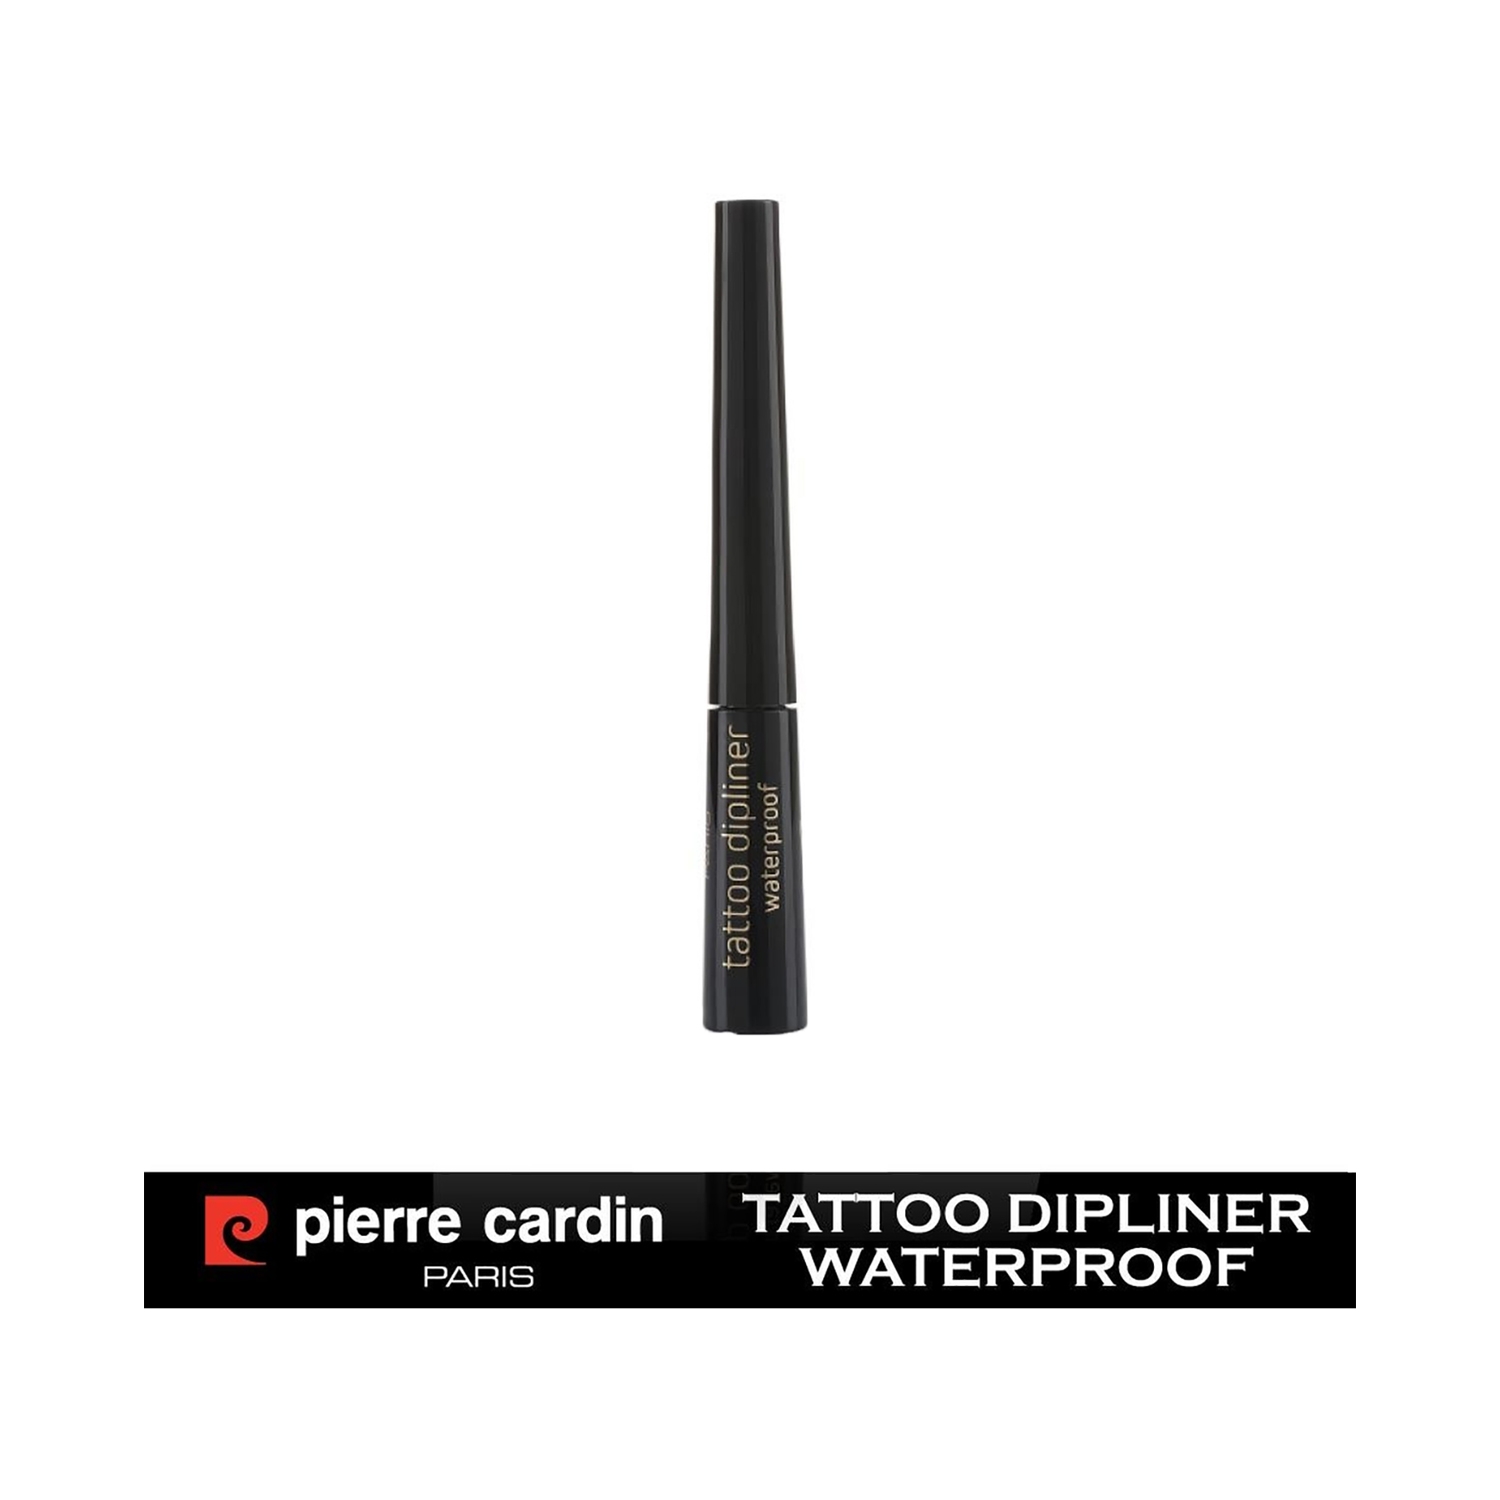 Pierre Cardin Paris | Pierre Cardin Paris Waterproof Tattoo Dipliner - 507 Black (3.5ml)